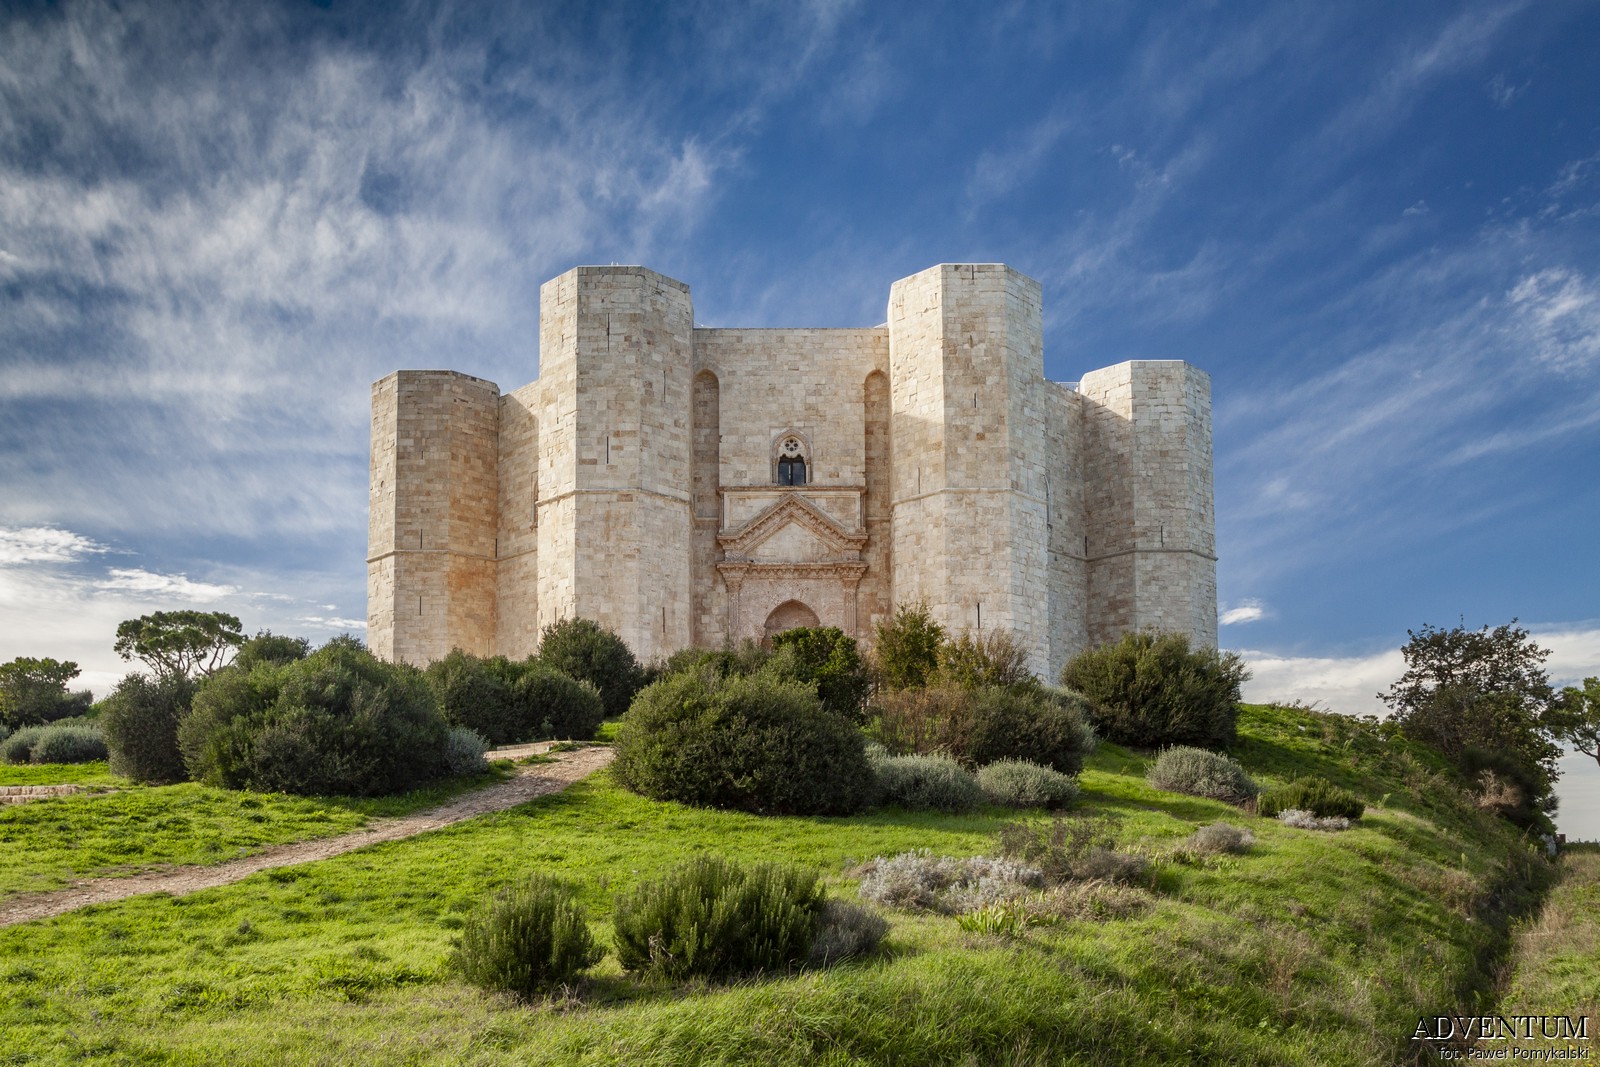 Castel del Monte pomysł wycieczka z Bari Apulia Atrakcja Zwiedzanie